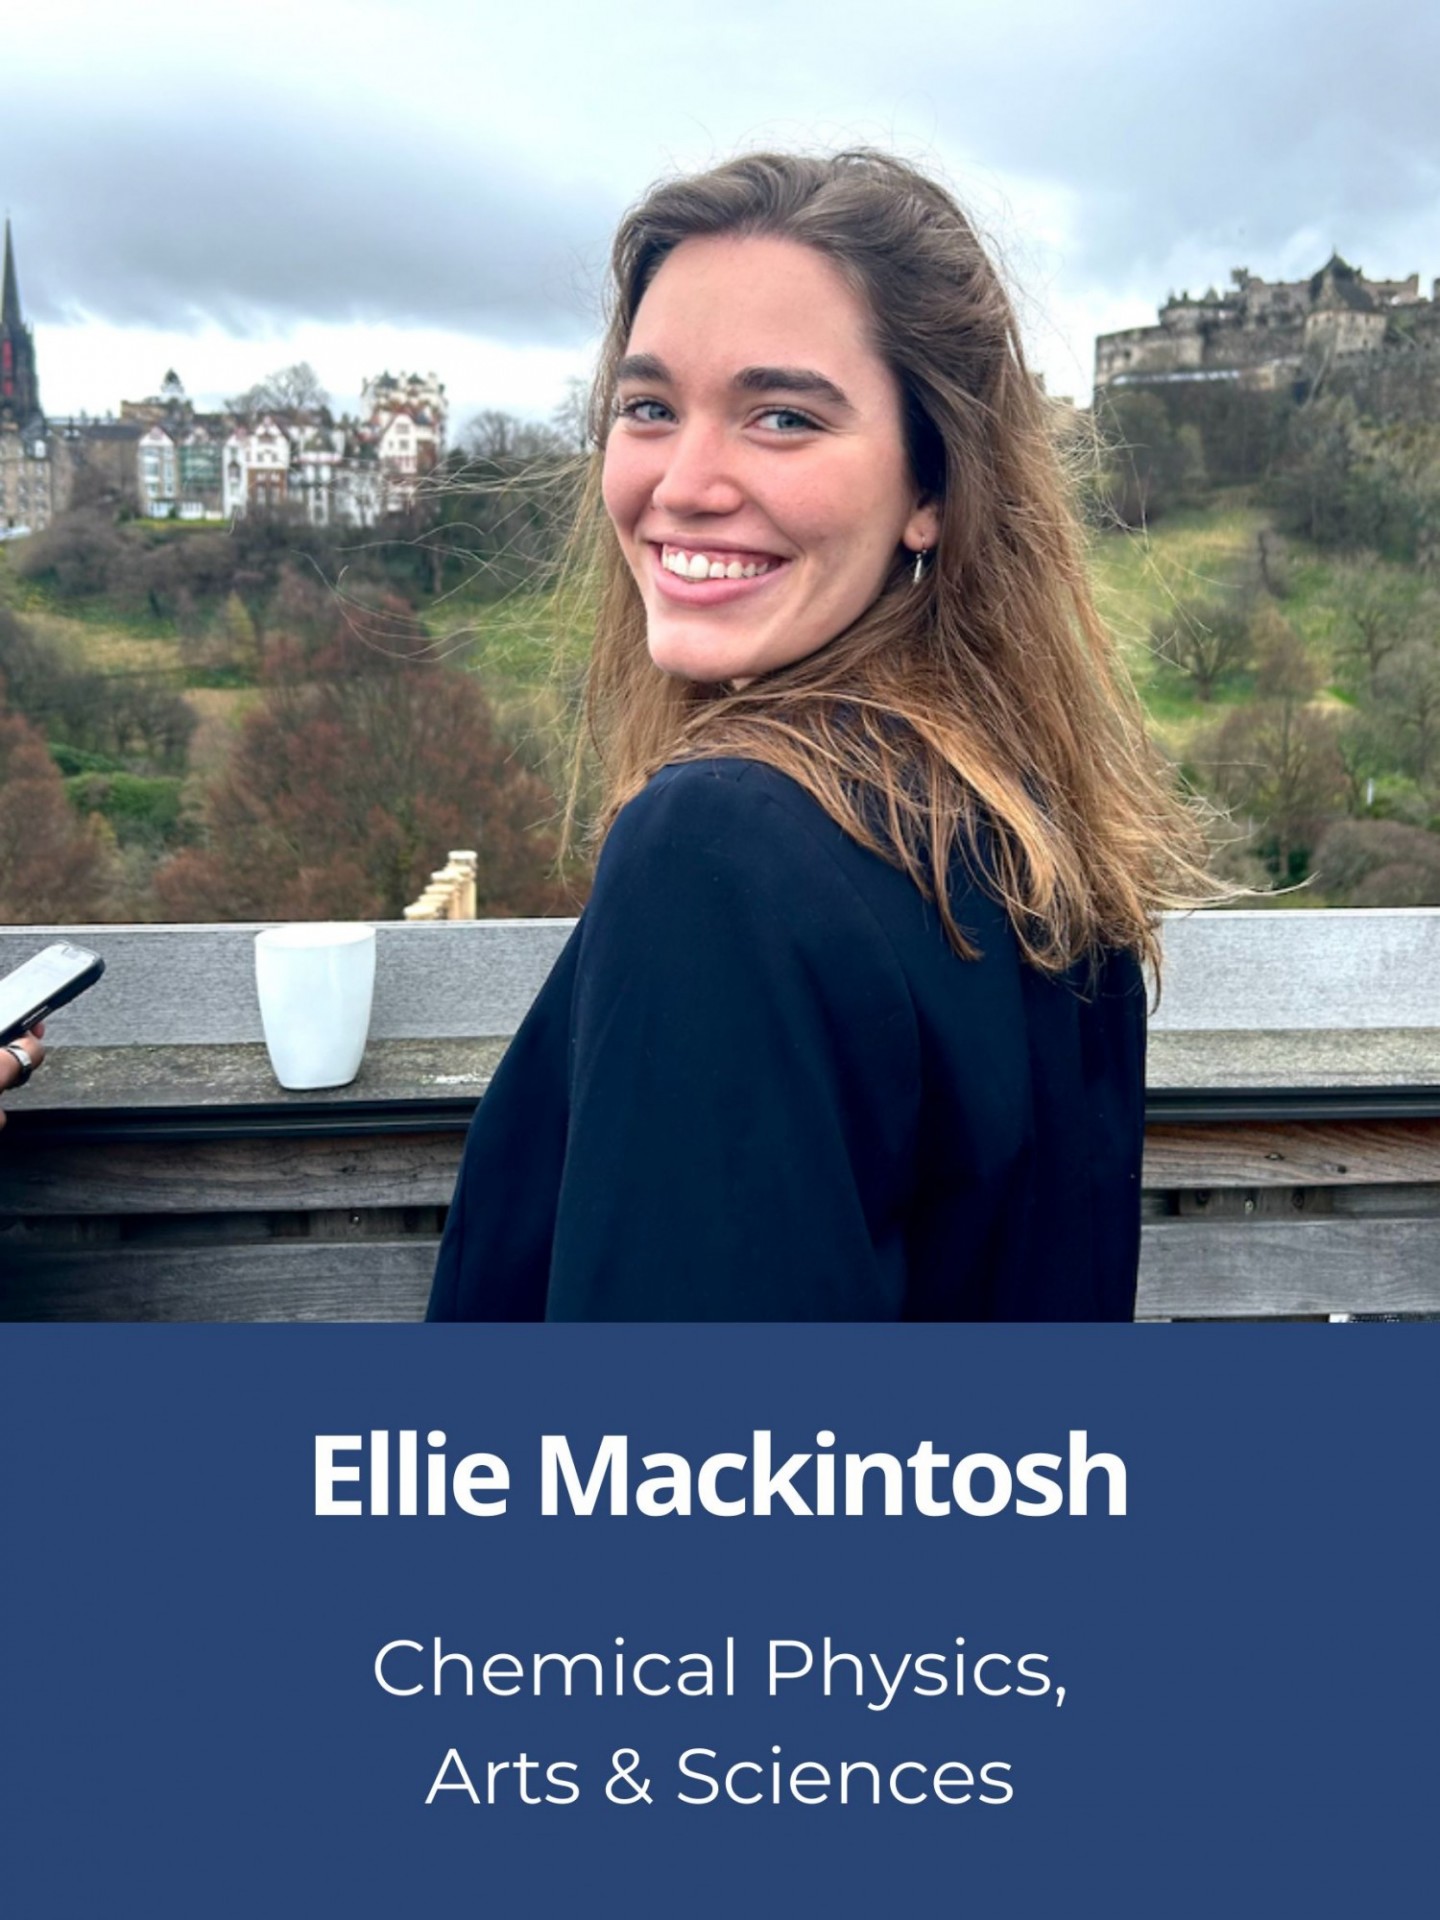 Headshot of Ellie Mackintosh, Chemical Physics, Arts & Sciences